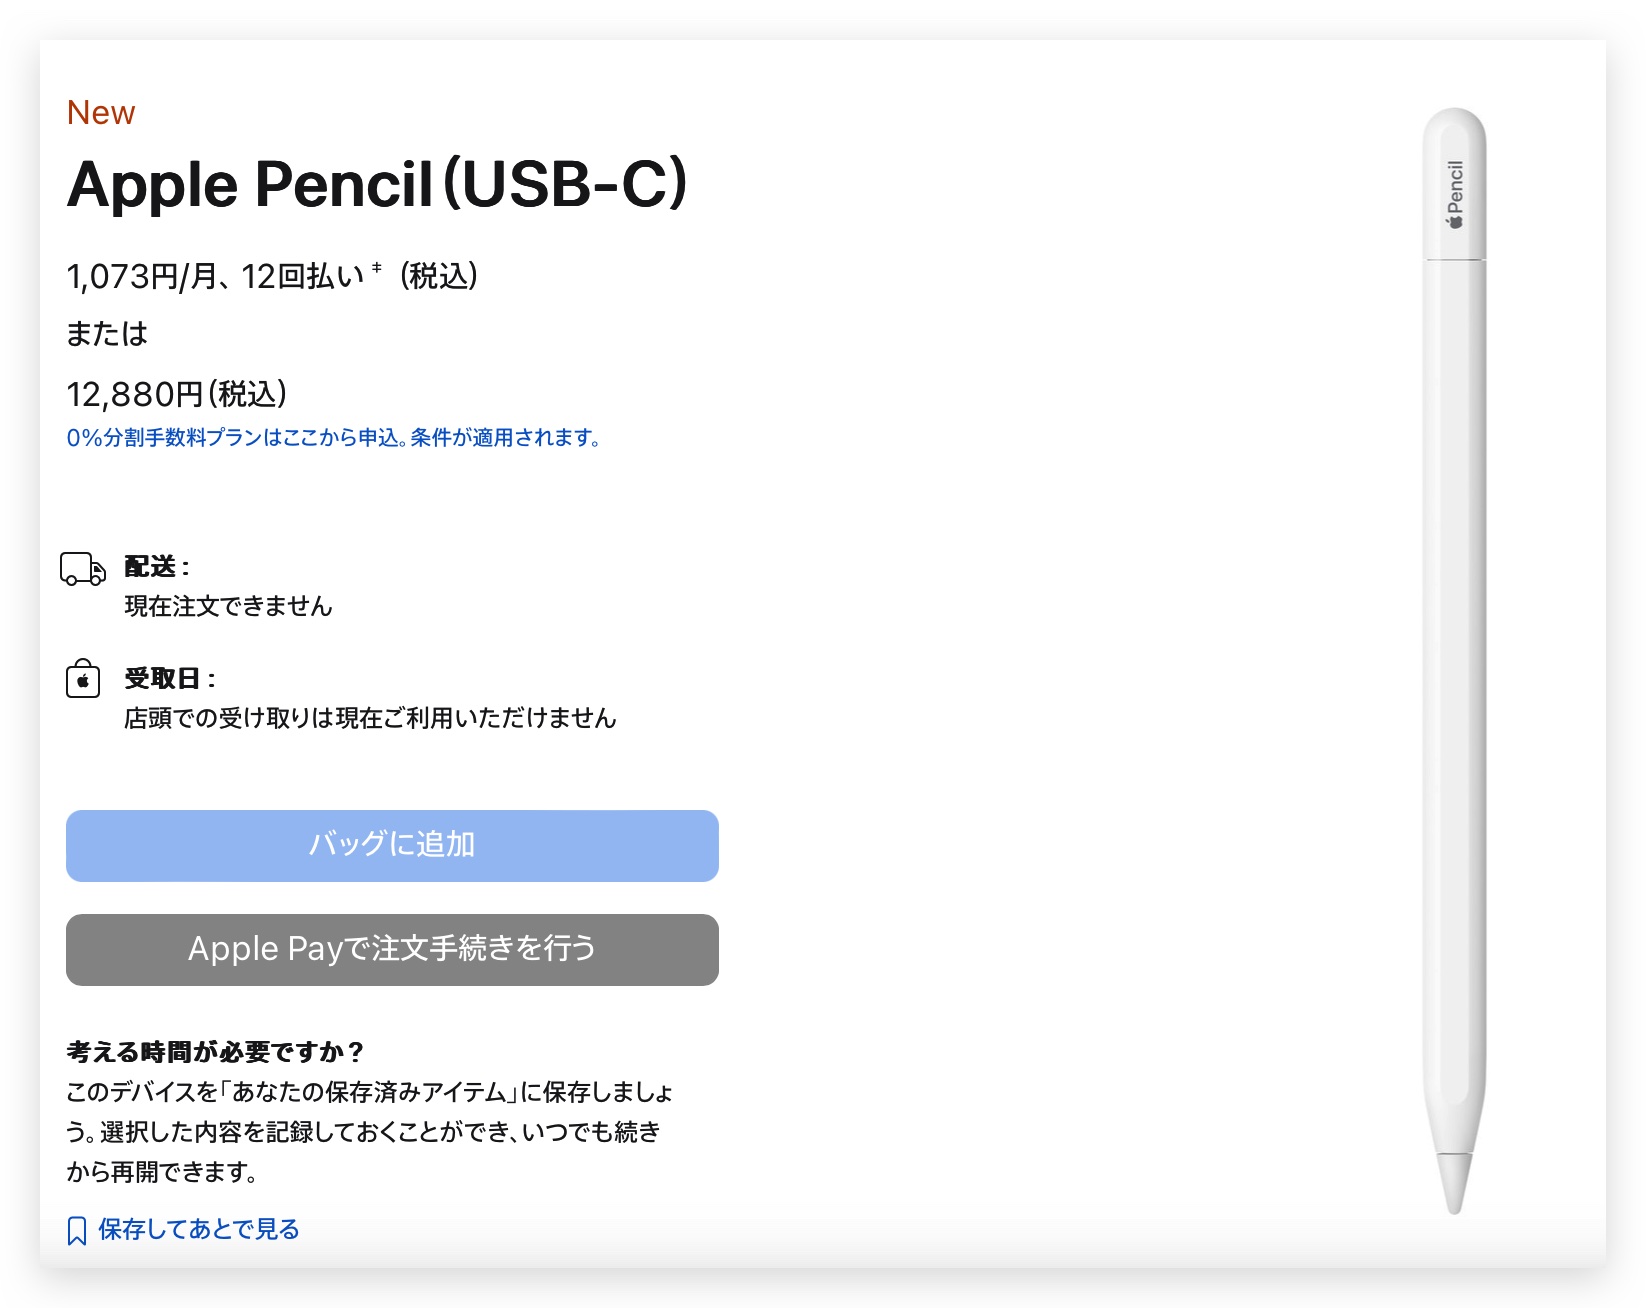 Apple Pencil USB-C 版 発売日はまだ確定していない